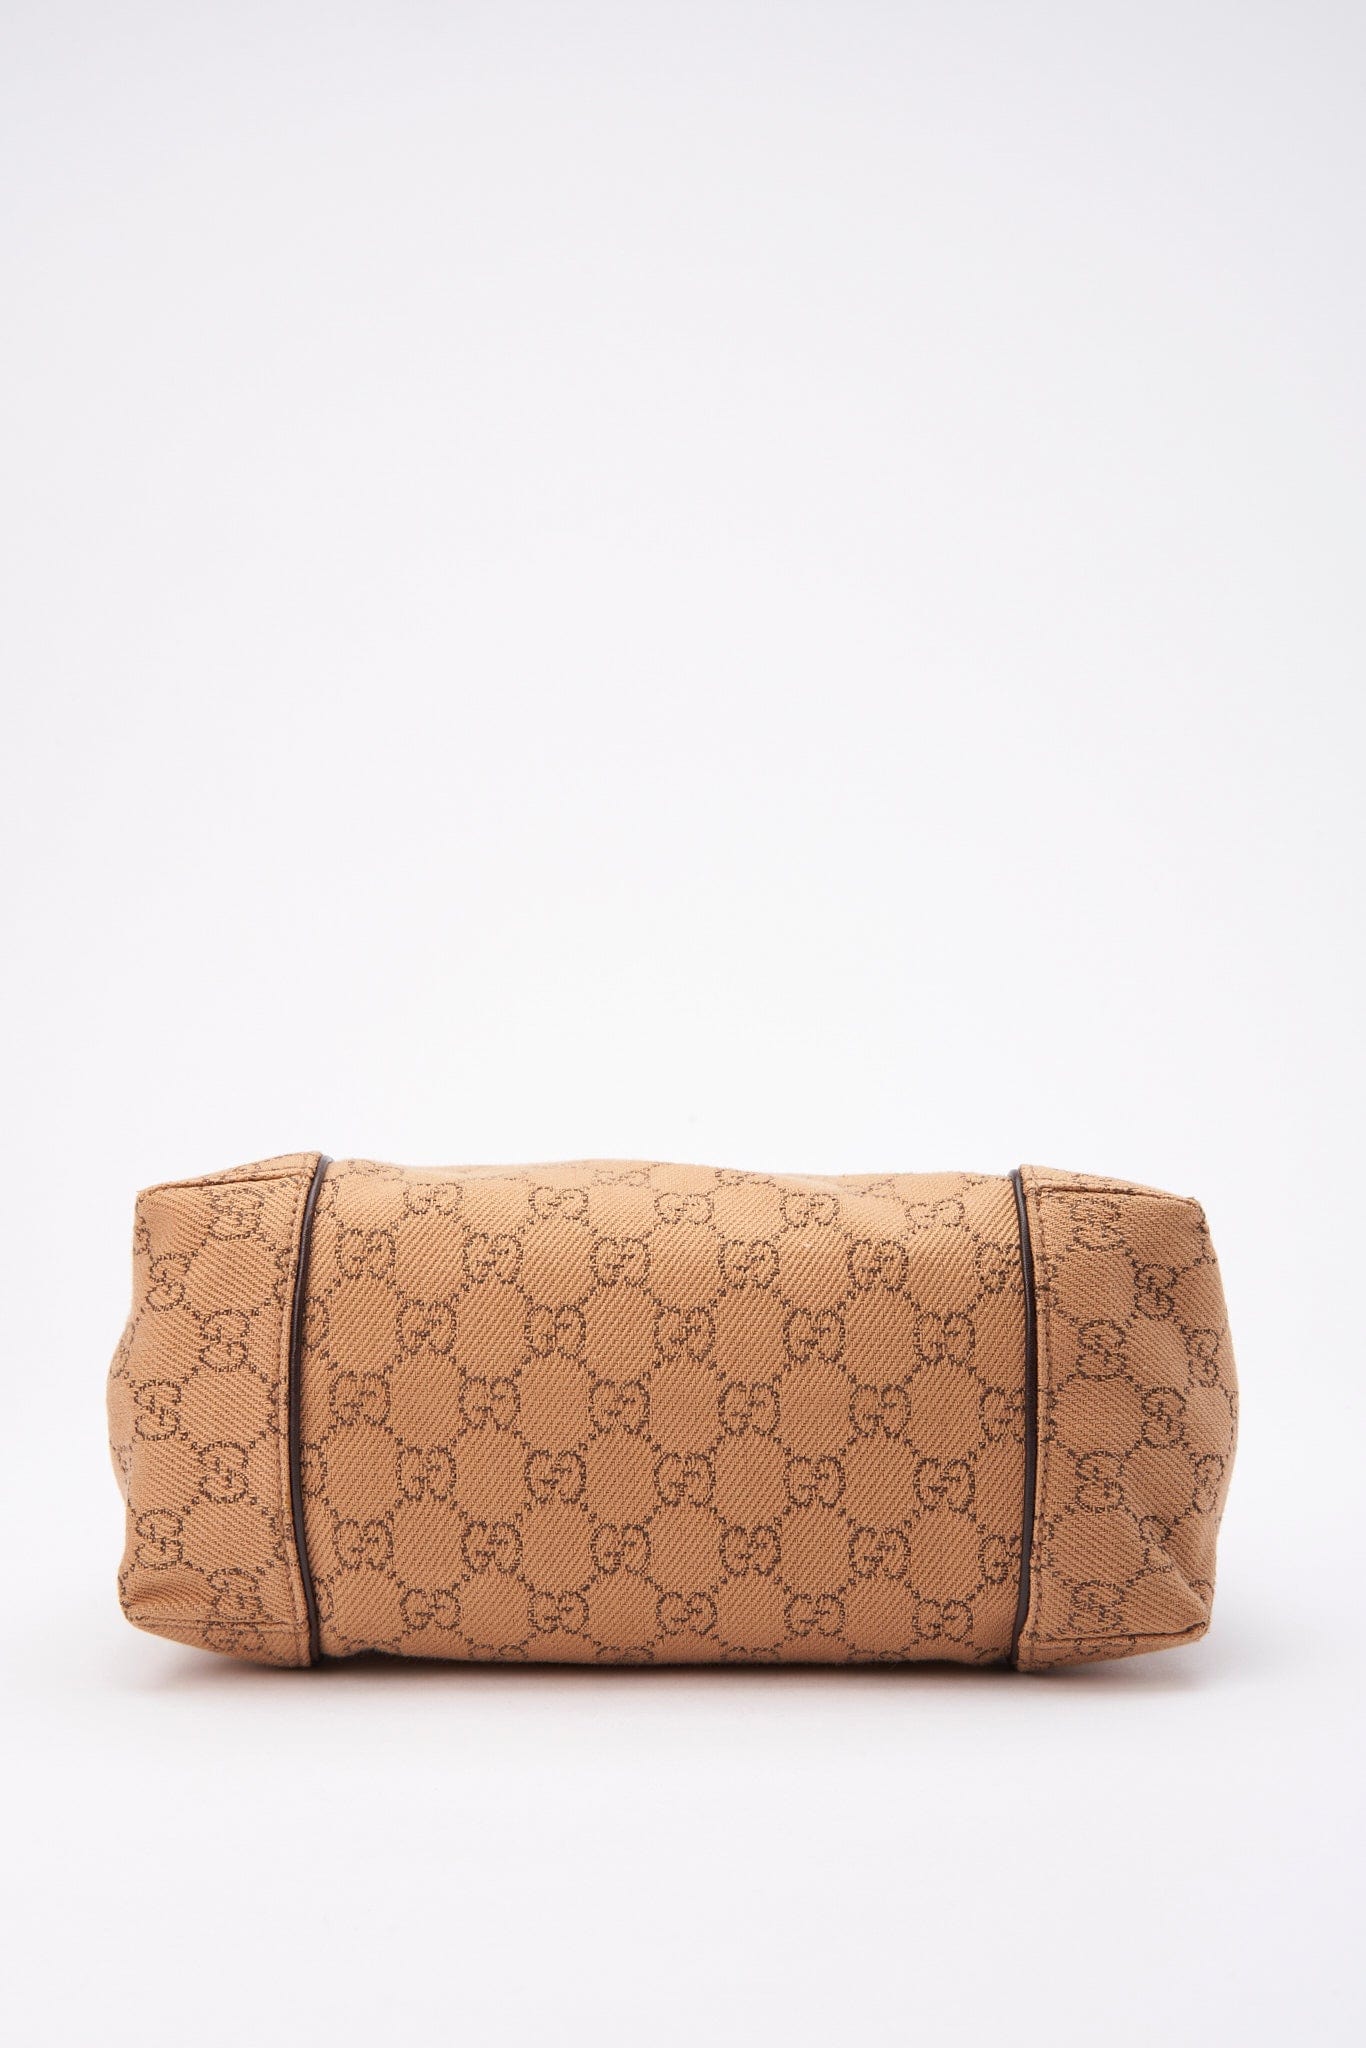 Vintage Gucci Beige Canvas Shoulder Bag